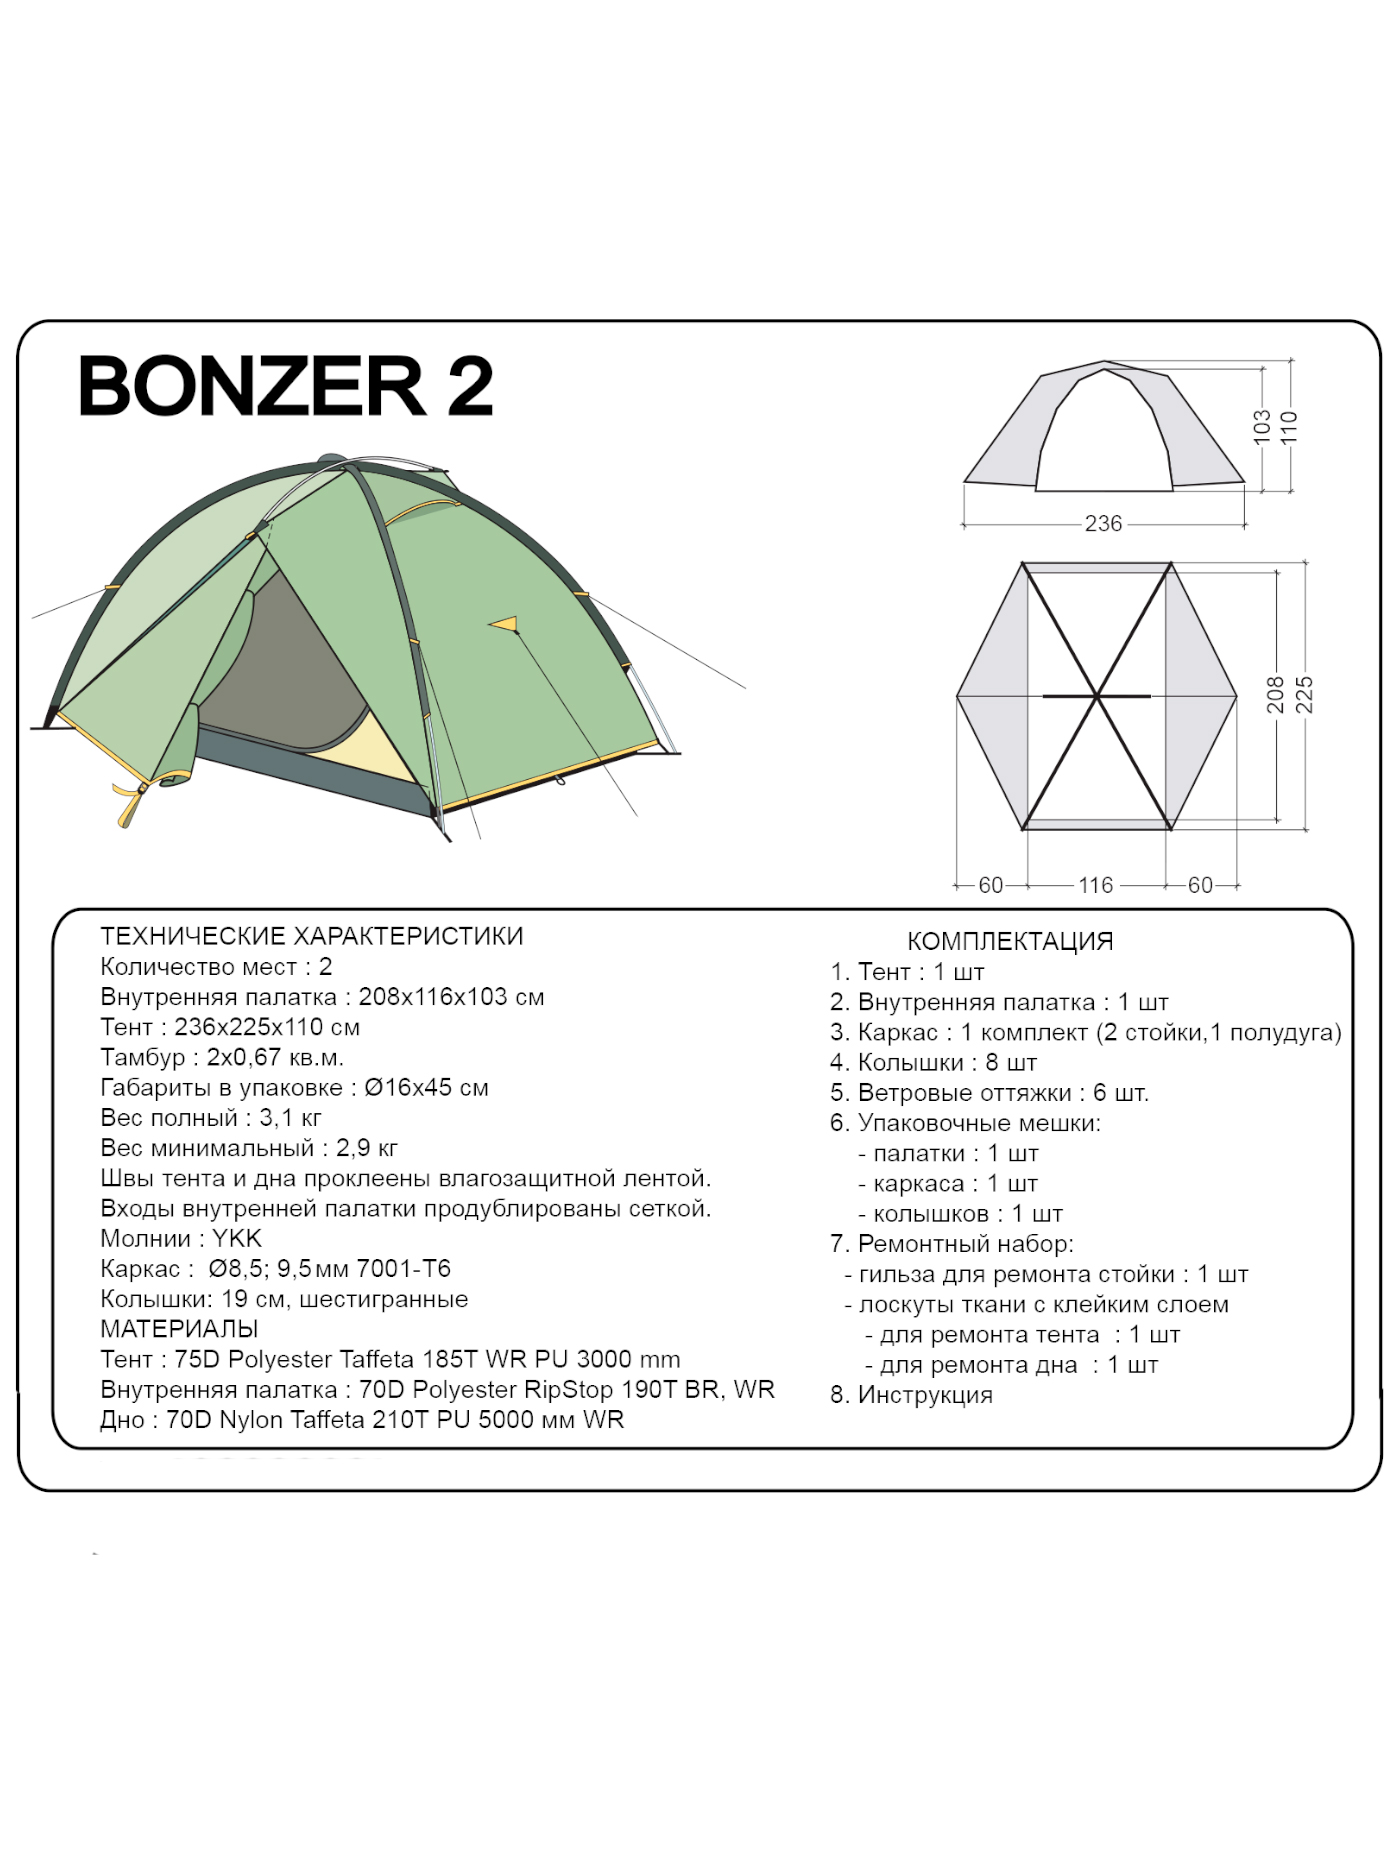 Палатка BASK, размер Ø16x45 см 4048 Bonzer 2 - фото 2